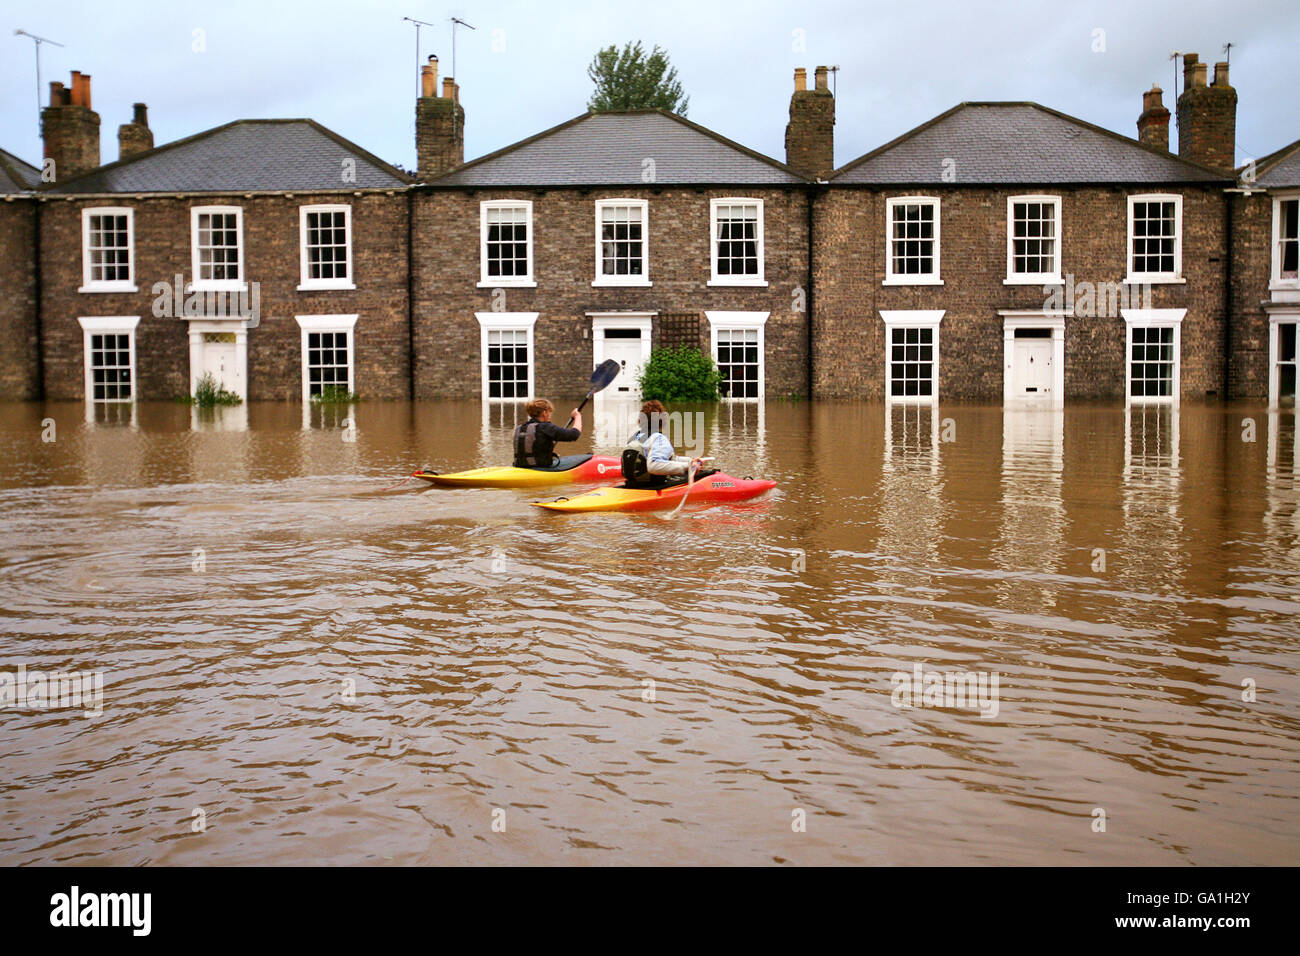 Le inondazioni colpiscono la Gran Bretagna. I canoisti approfittano oggi delle inondazioni a Beverley, East Yorkshire. Foto Stock